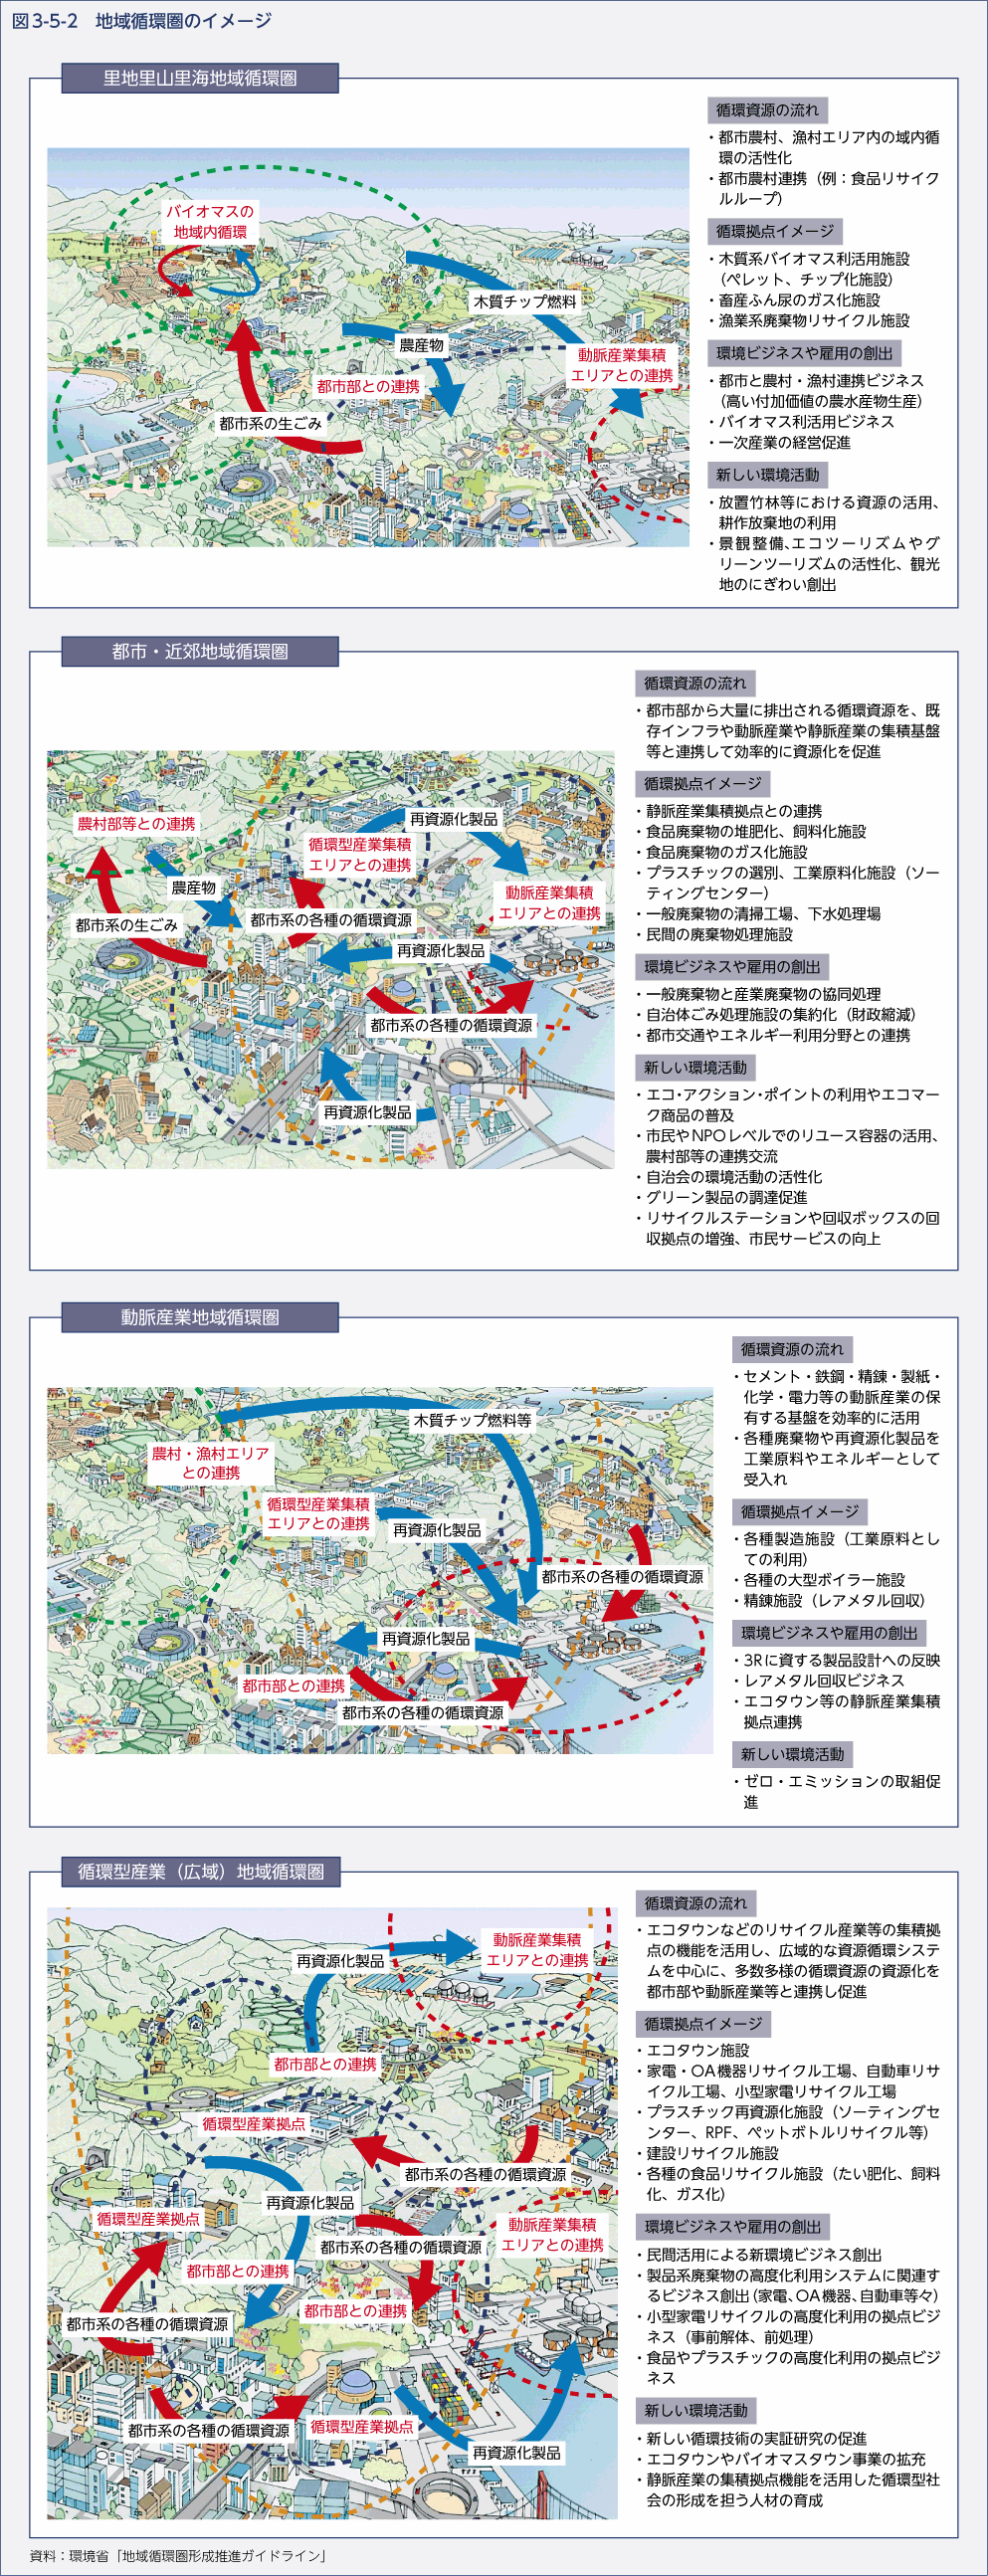 図3-5-2　地域循環圏のイメージ